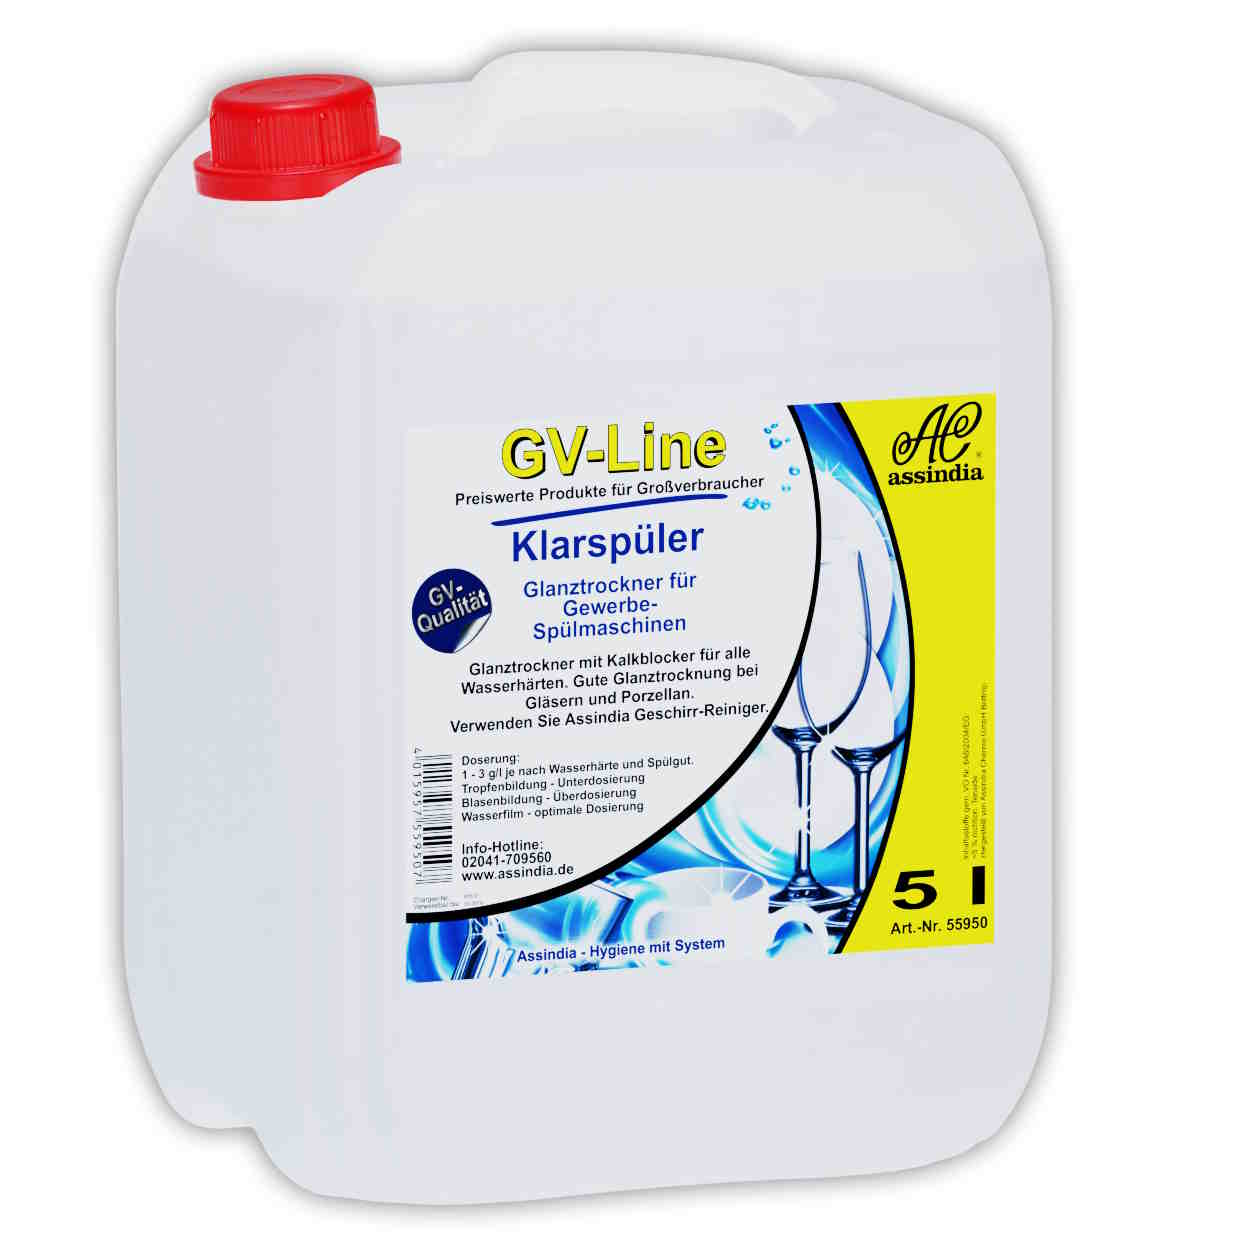 K & N Luftfilter-Reiniger Kanister - 3,8 Liter